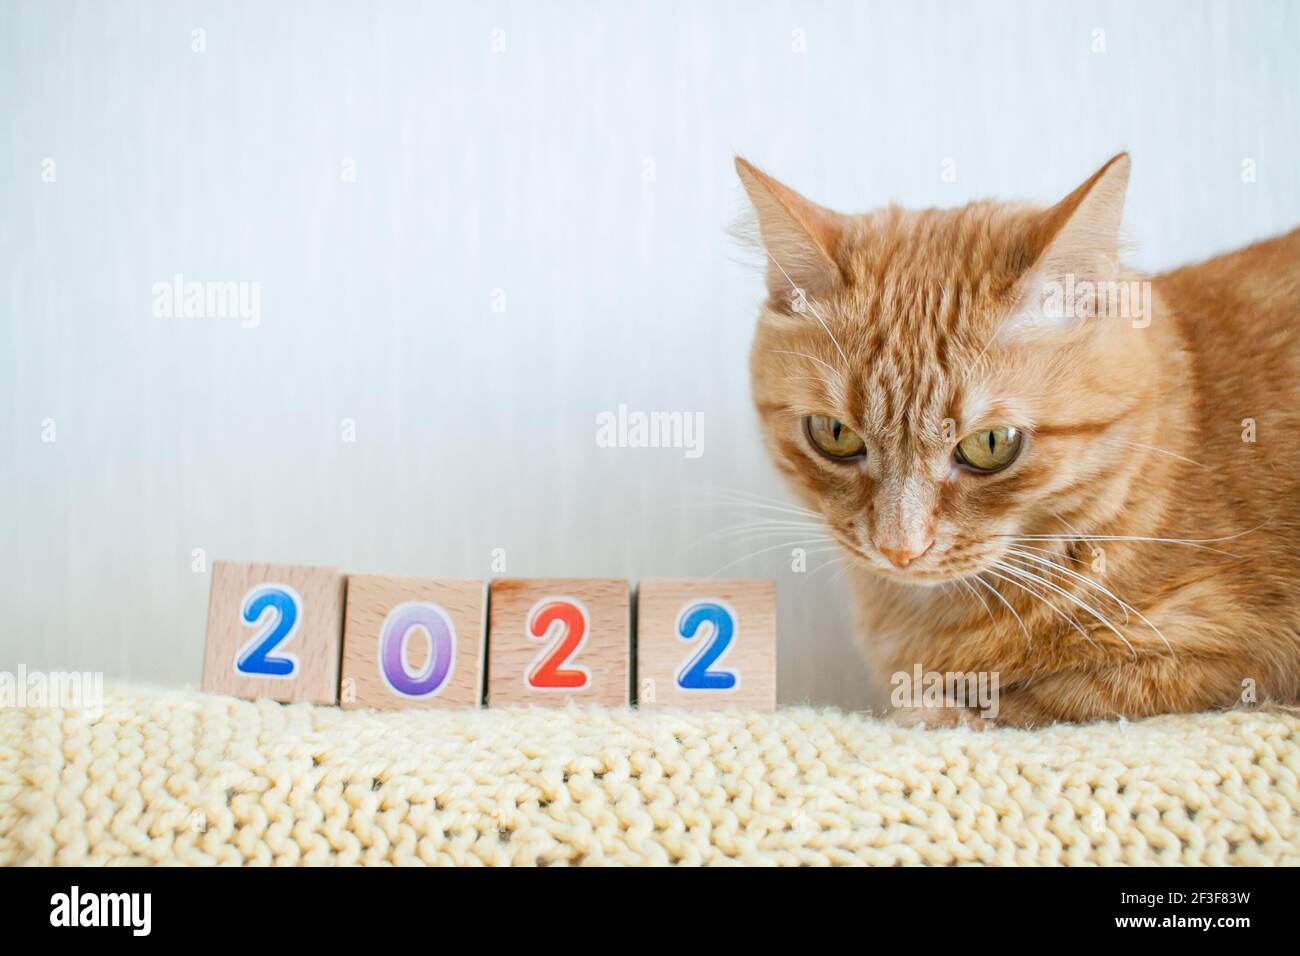 drôle de graisse gingembre chat études cubes avec des chiffres 2022. Nouvelle année 2022 Banque D'Images